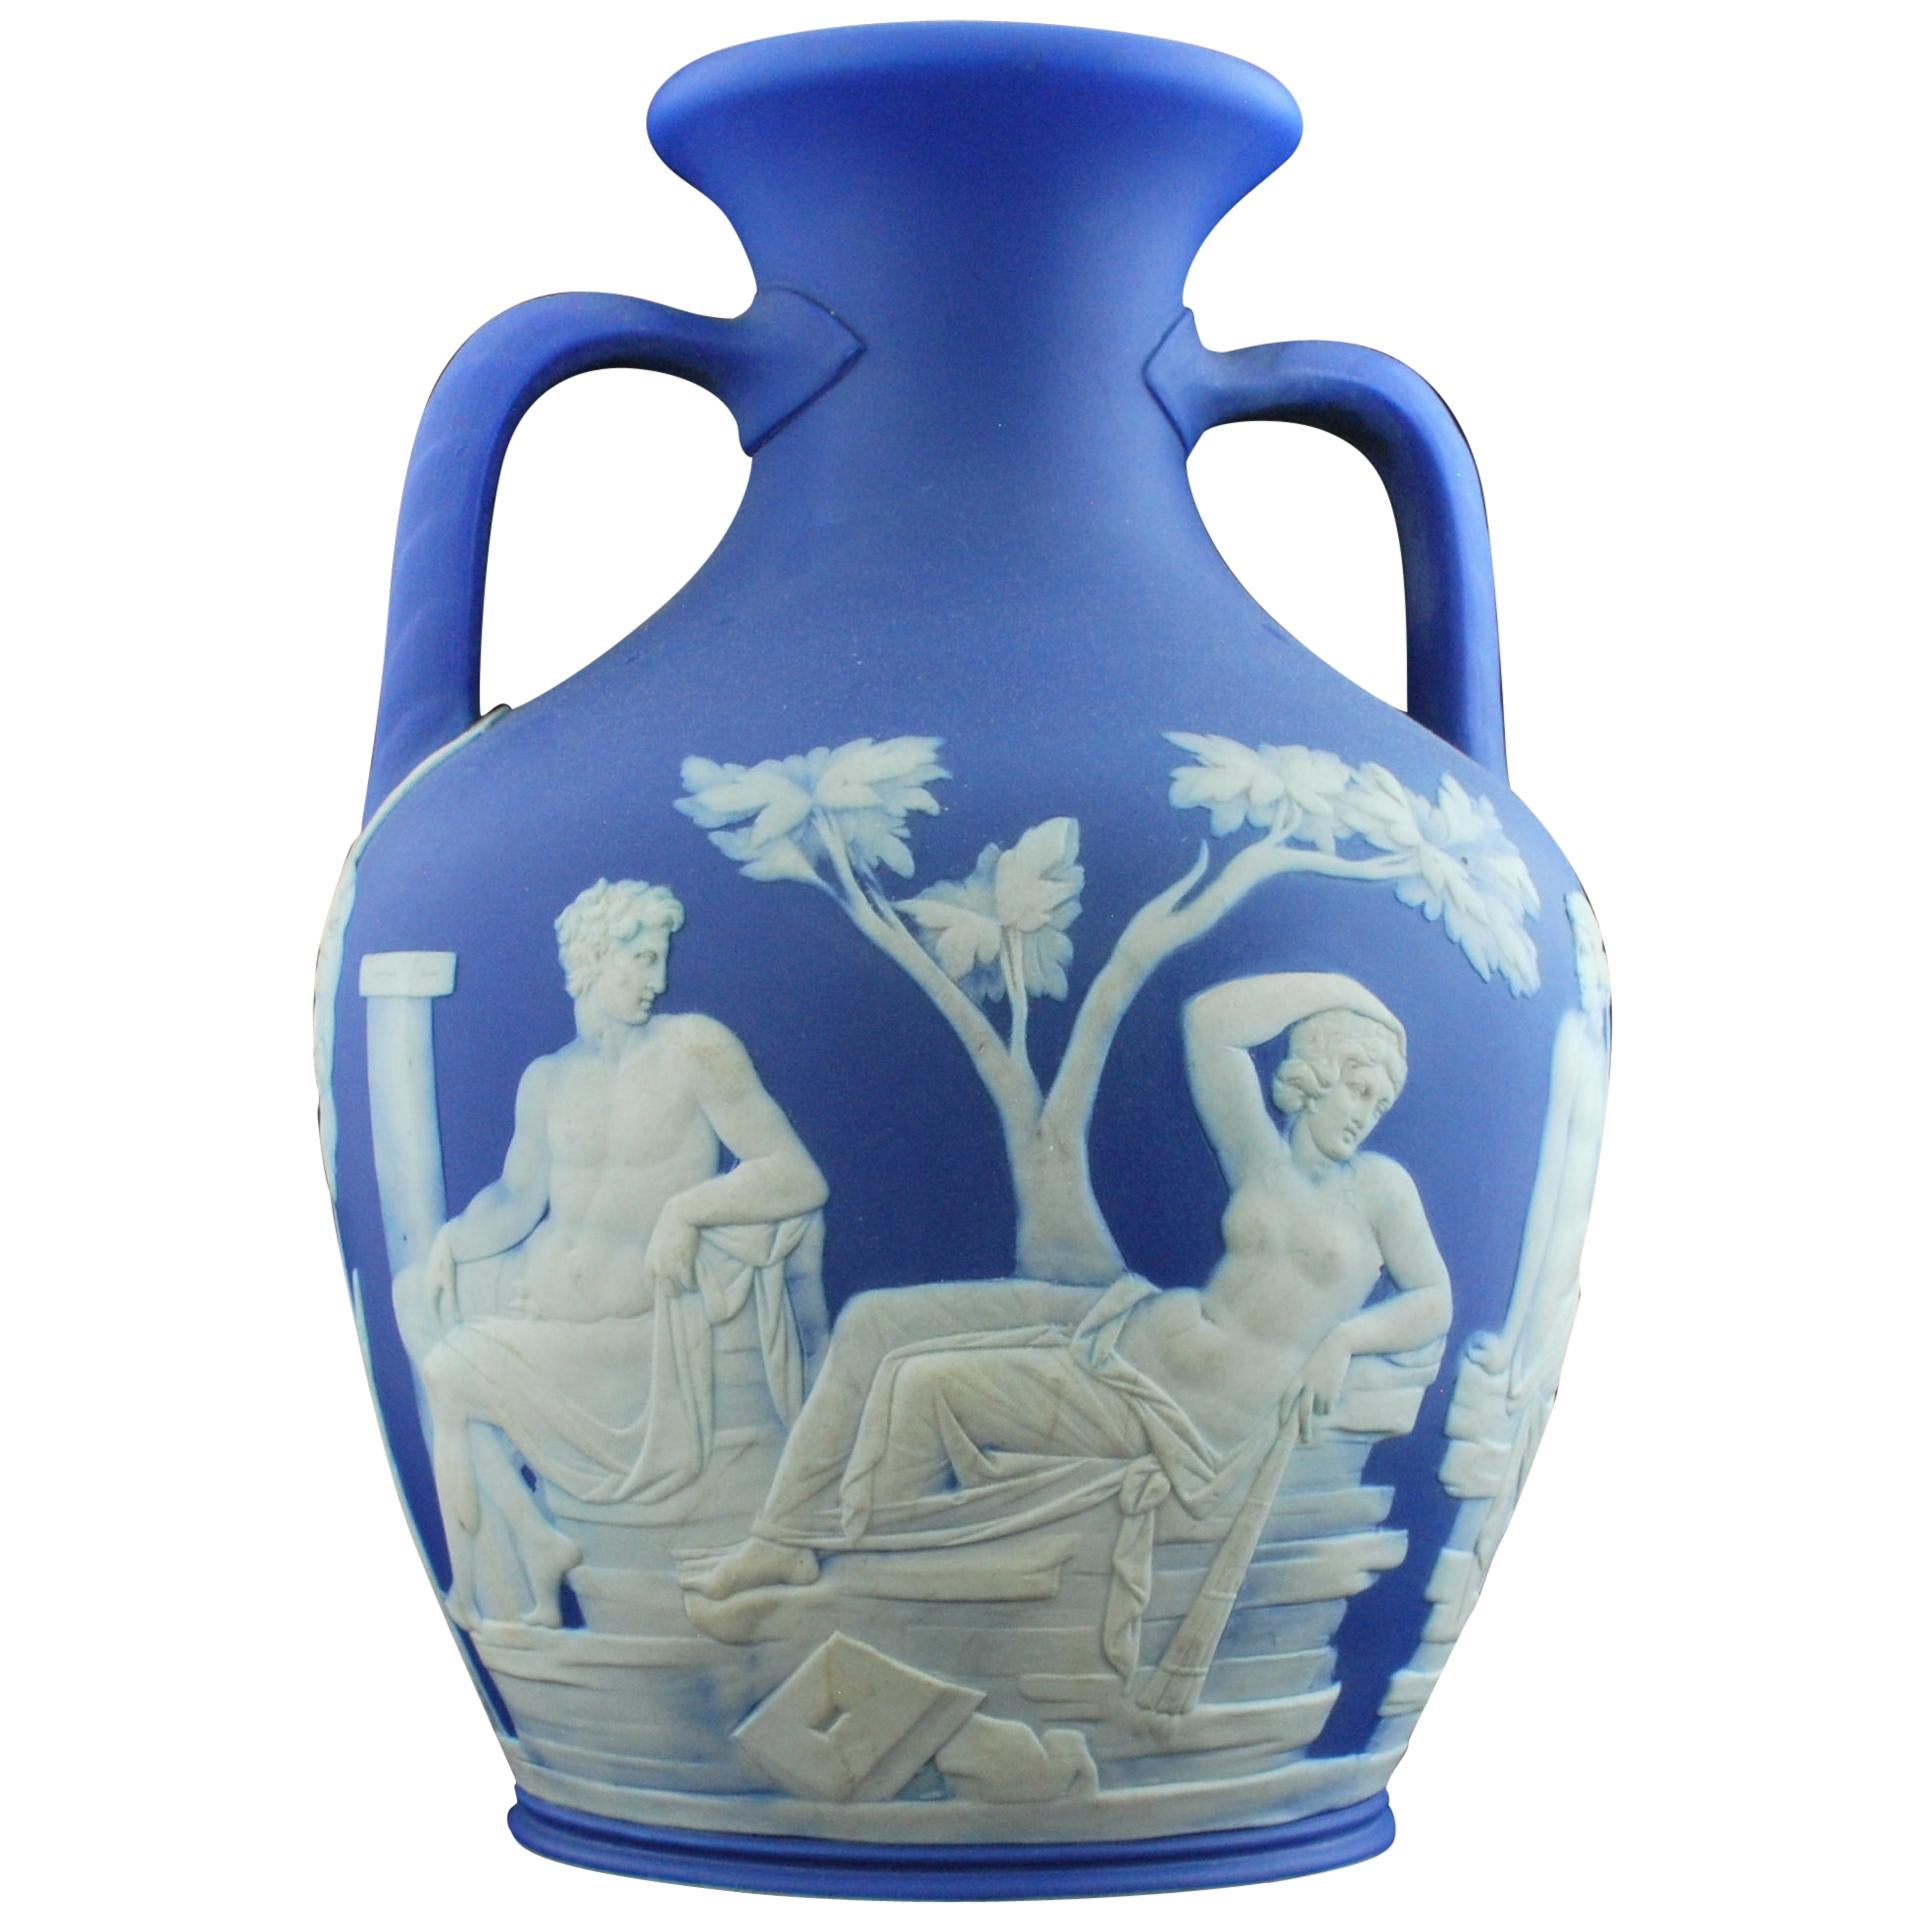 Portland Vase, Full Sized, Wedgwood, circa 1840